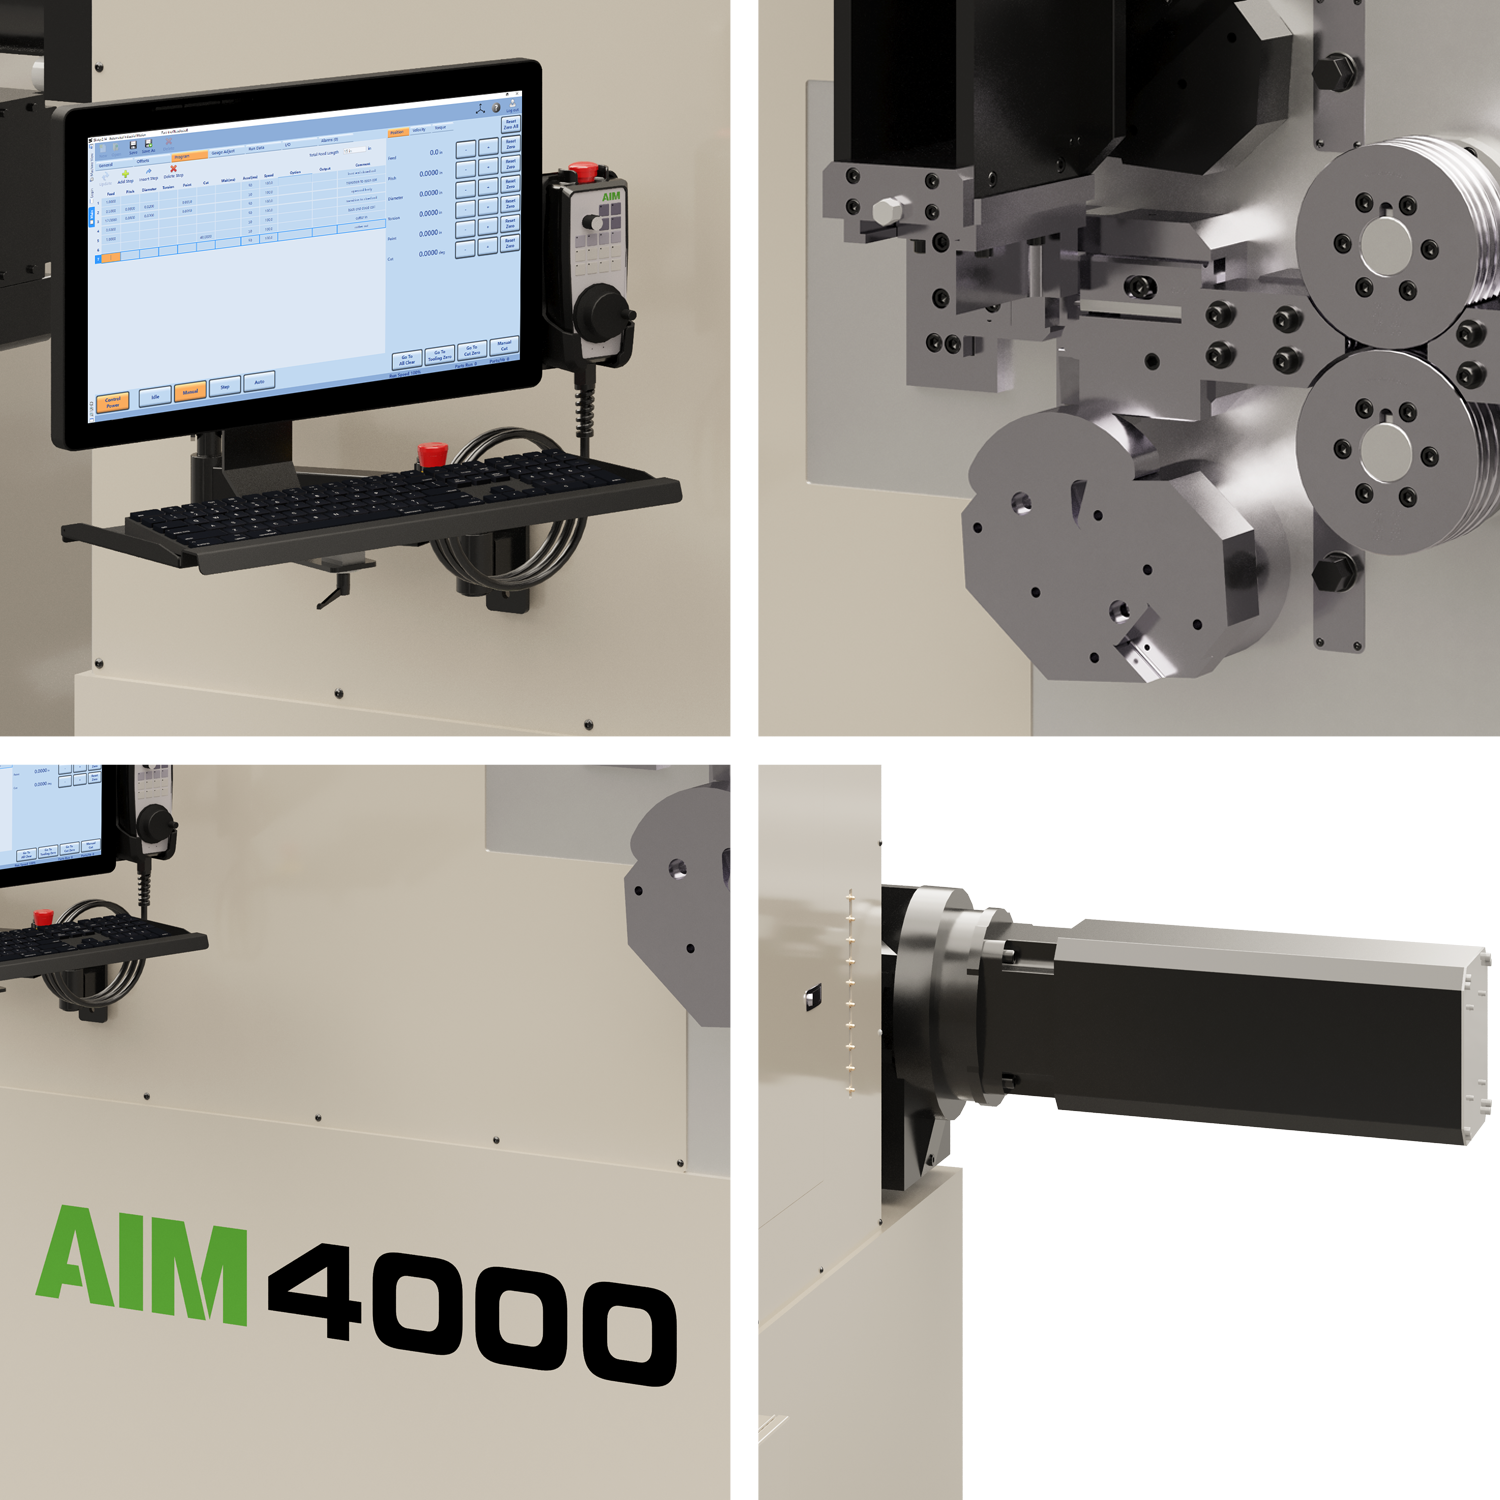 AIM 4000 CNC Spring Coiler Closeups